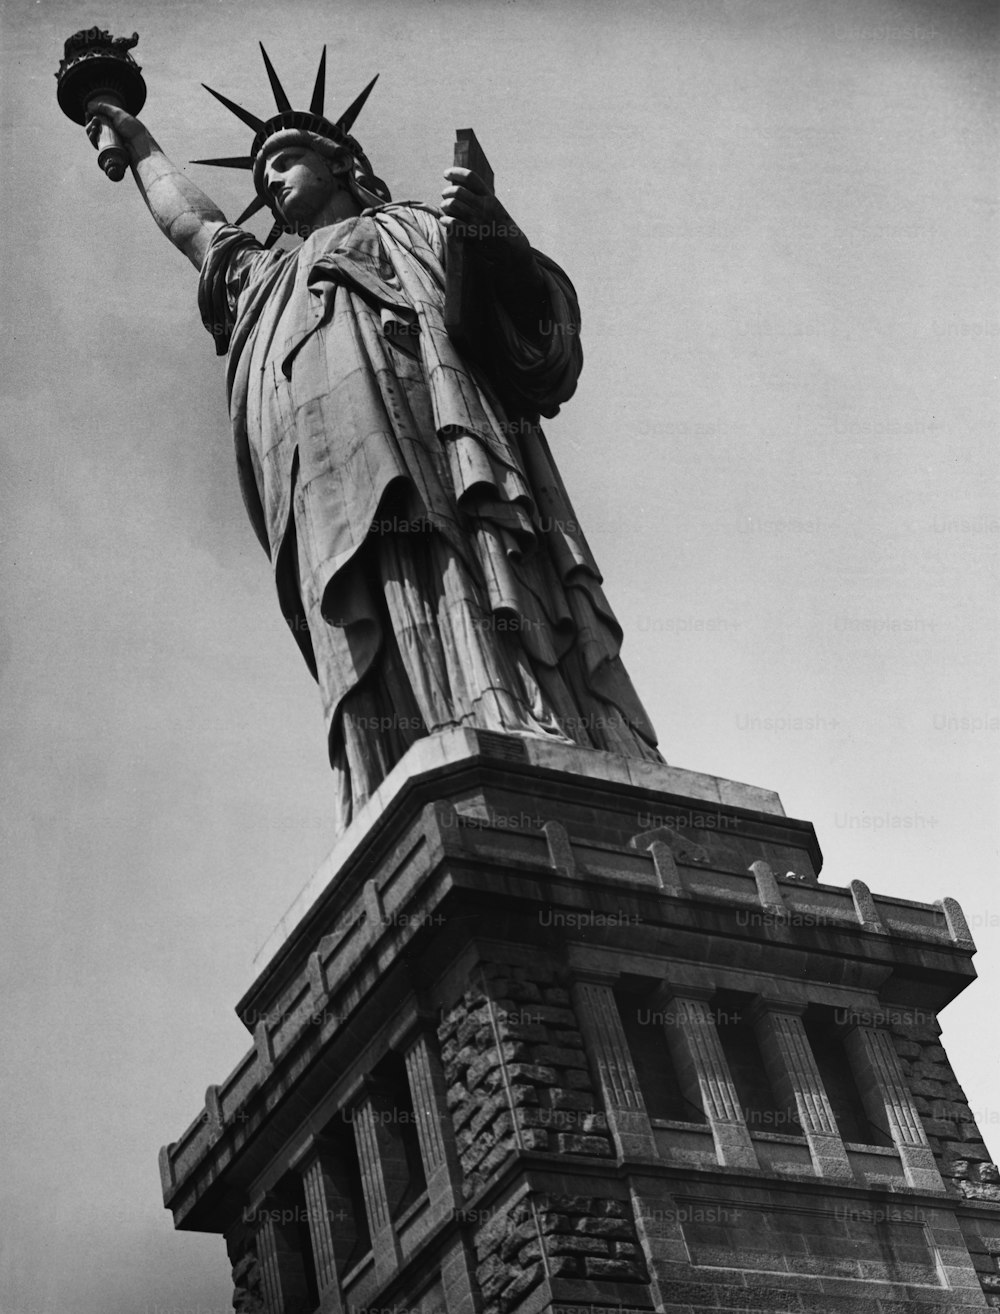 1950年頃、アメリカ・ニューヨーク市のリバティ島にある自由の女神像。 (写真提供:George Marks/Retrofile/Getty Images)